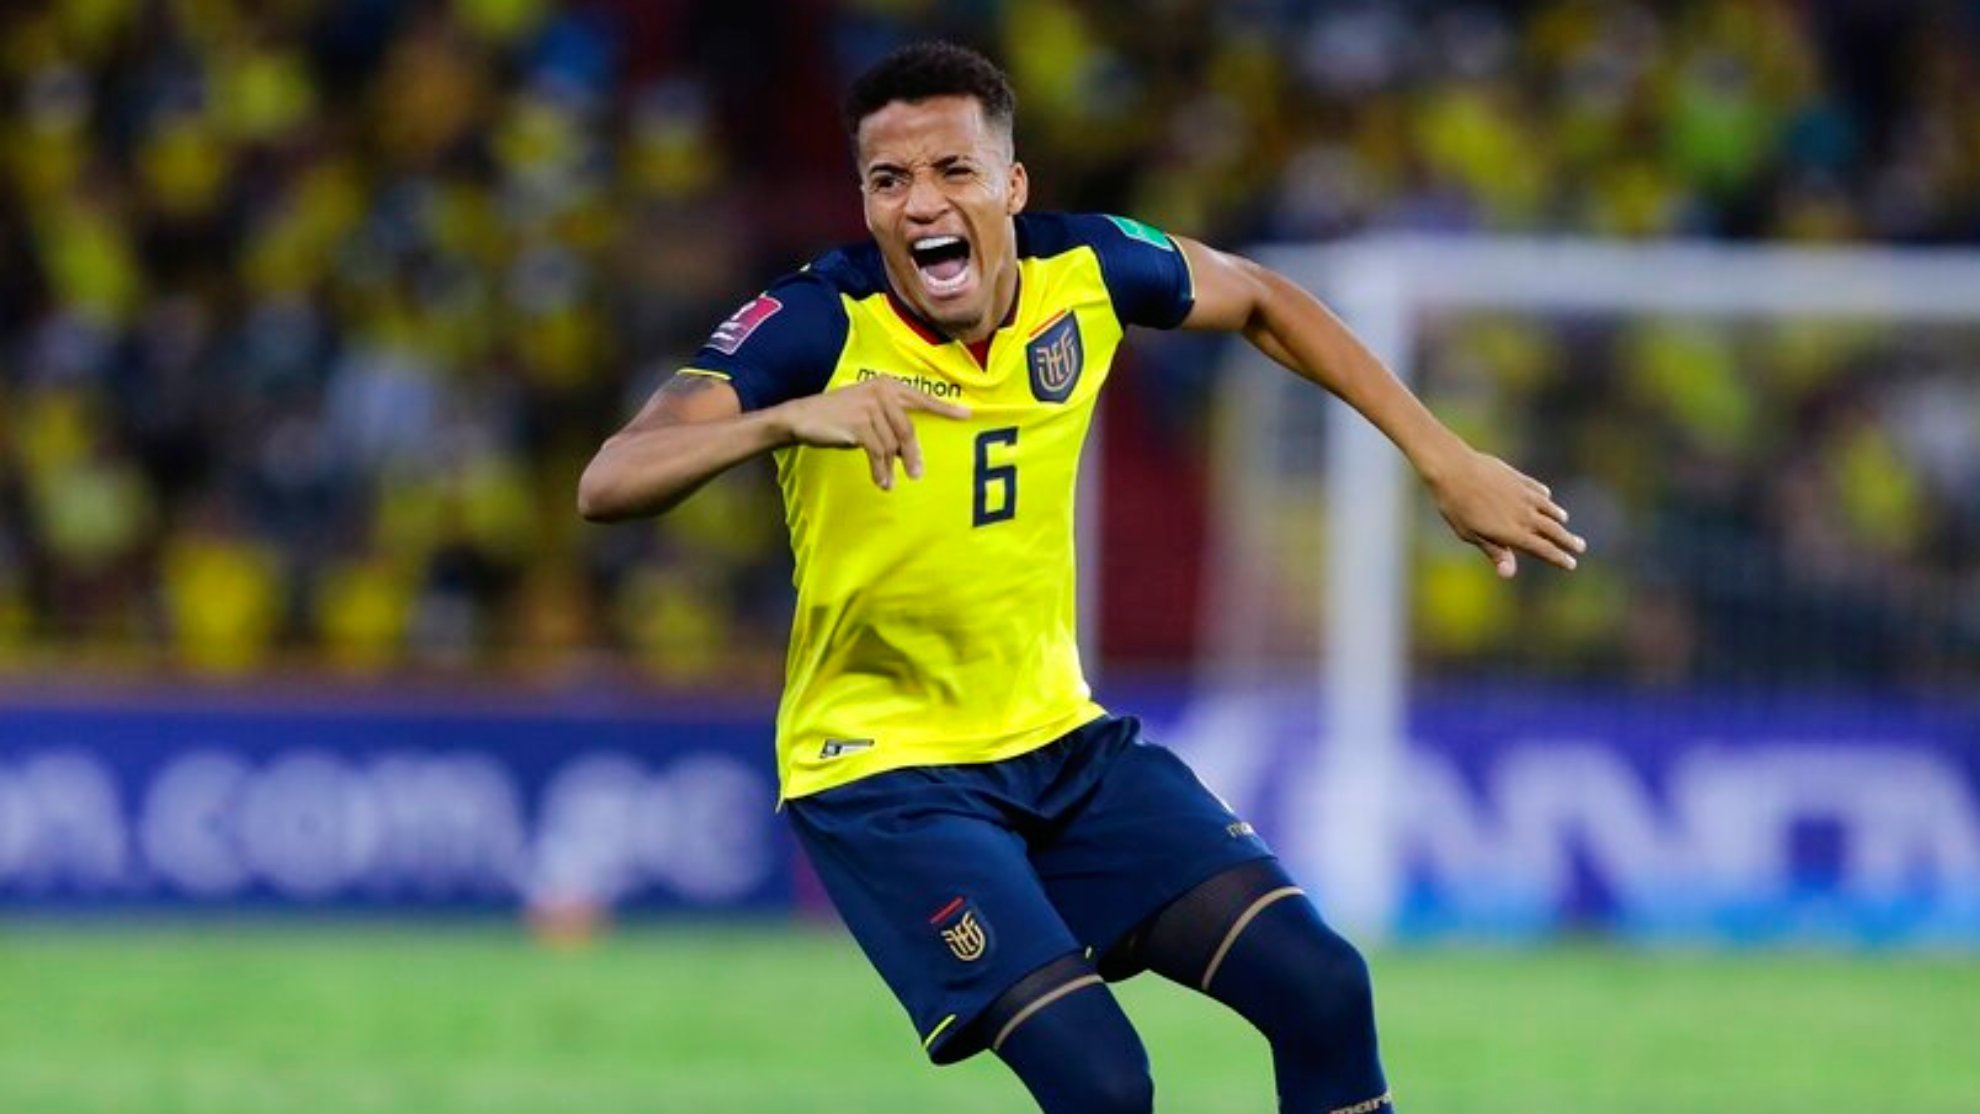 Chile denuncia ante la FIFA a Ecuador por falsa nacionalidad del jugador Byron Castillo